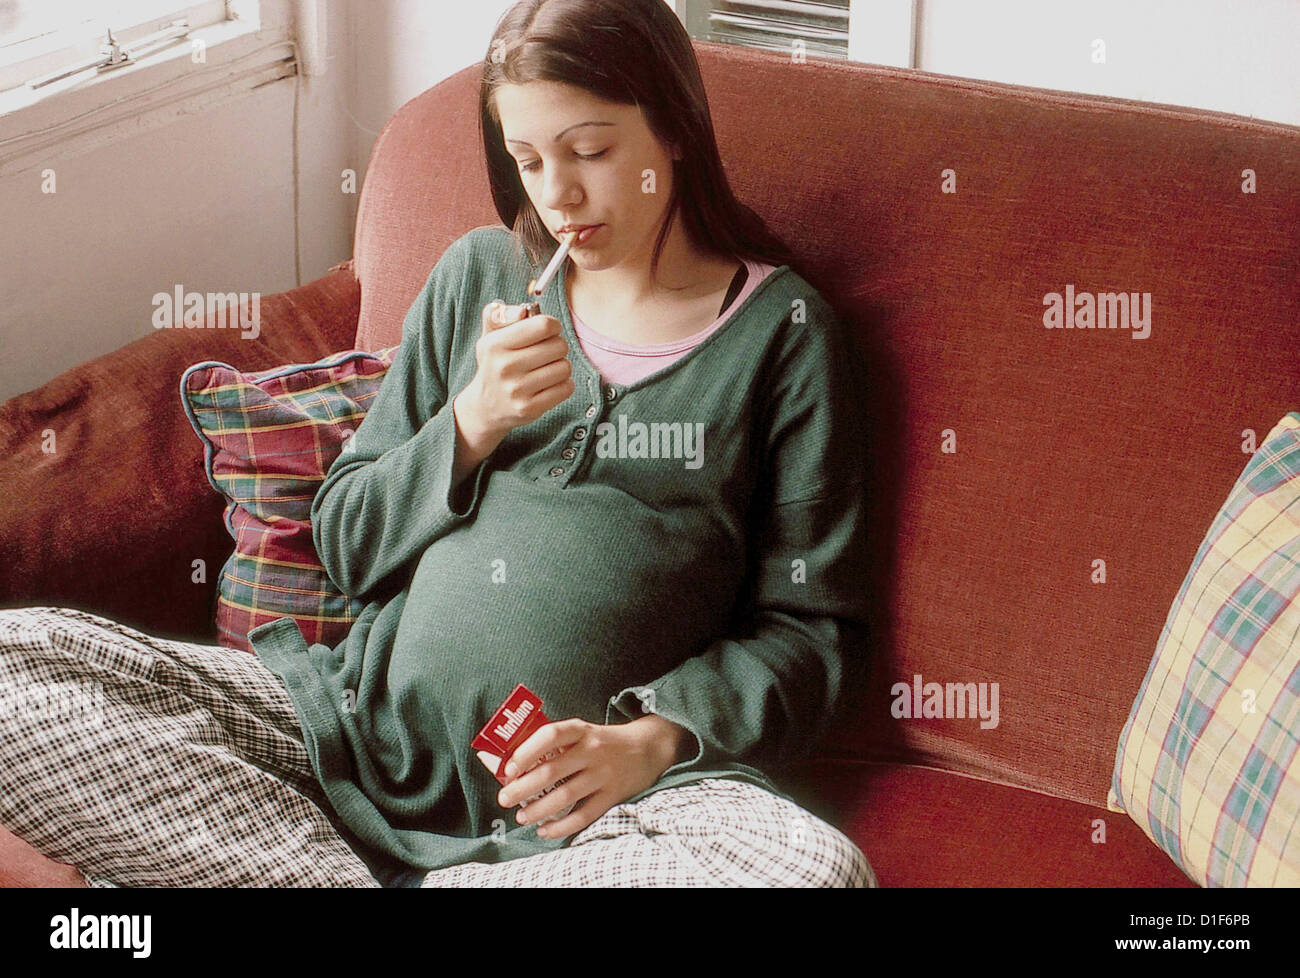 Adolescente enceinte fumeurs Banque D'Images